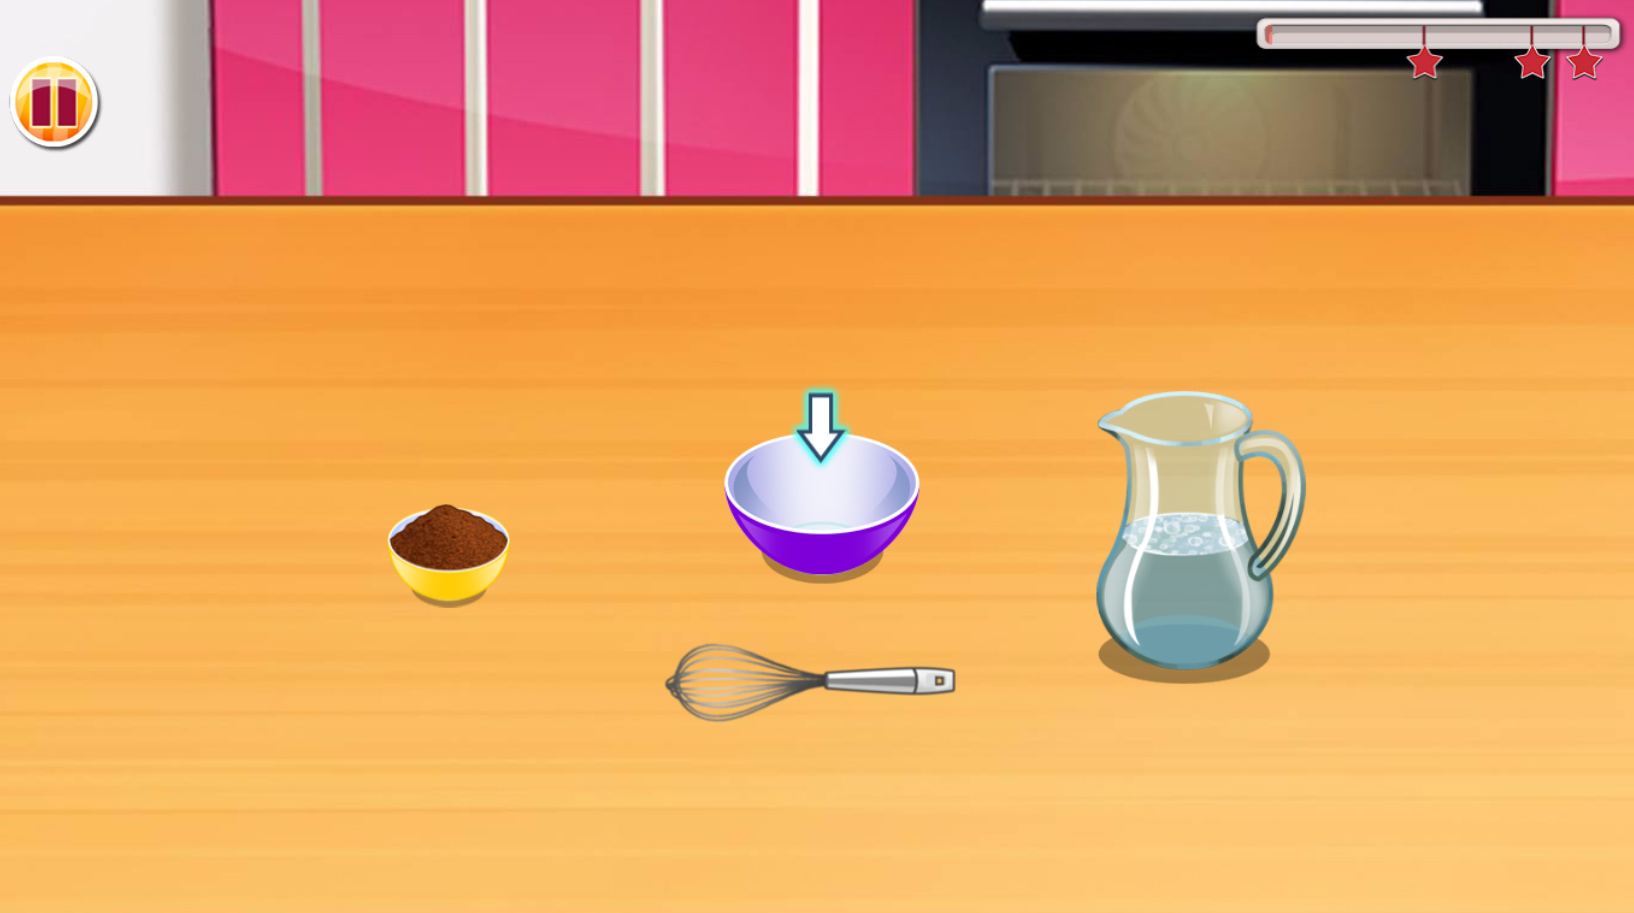 Jogo Sara's Cooking Class: Tiramisu Cup no Jogos 360